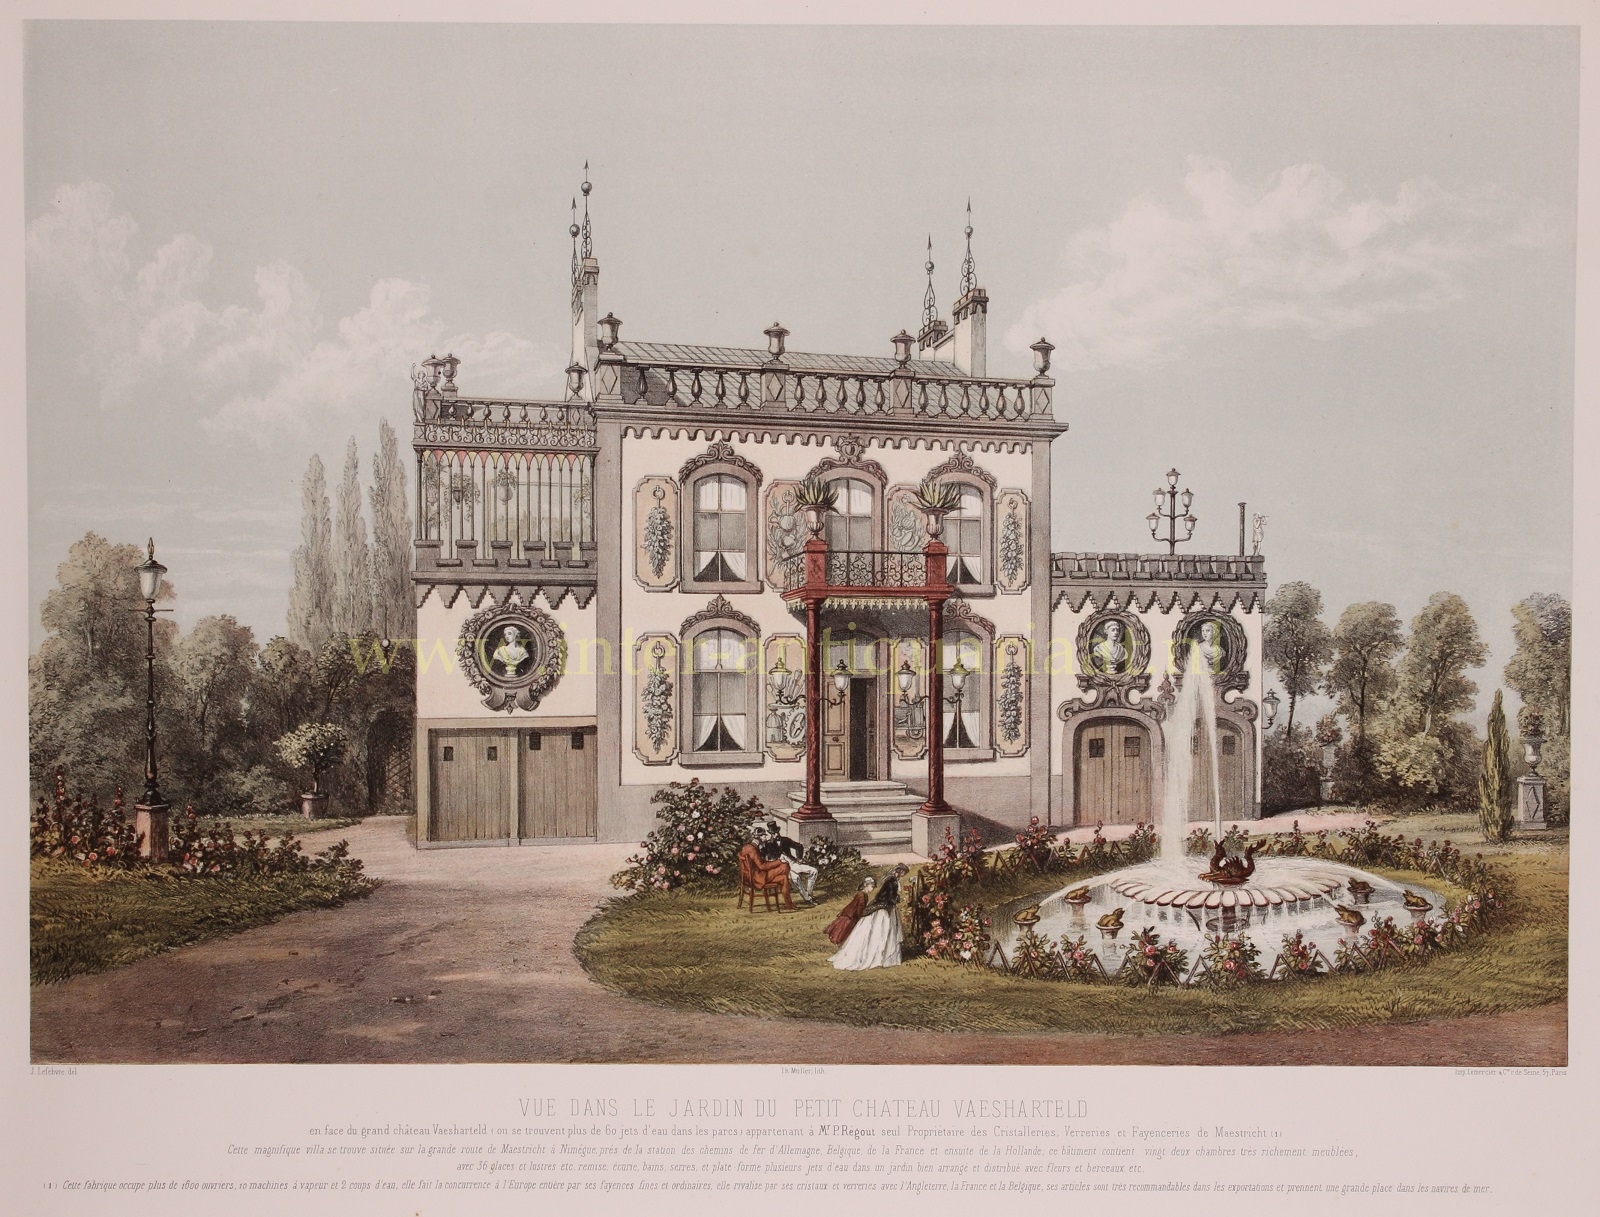  - Klein Vaeshartelt (Maastricht), garden view - Theodore Mller + Lemercier, 1863